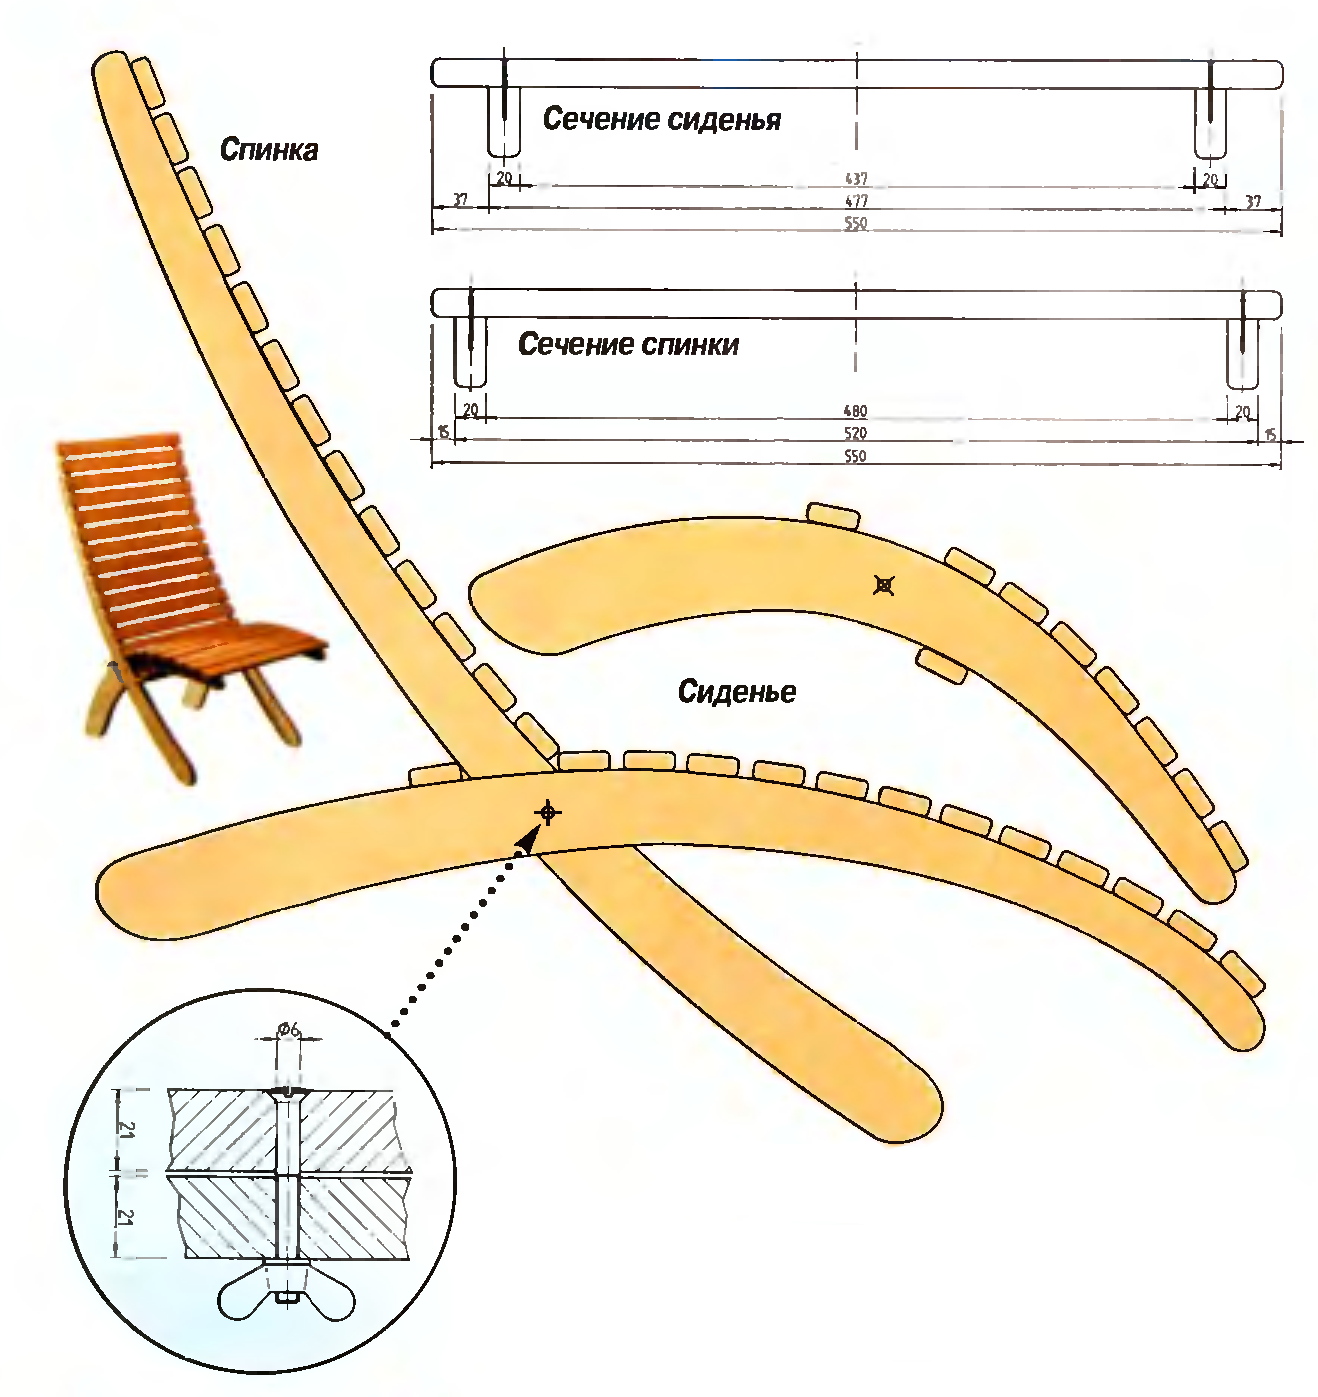 Кресло-качалка своими руками: делаем самостоятельно по инструкции из дерева кресло-качалку